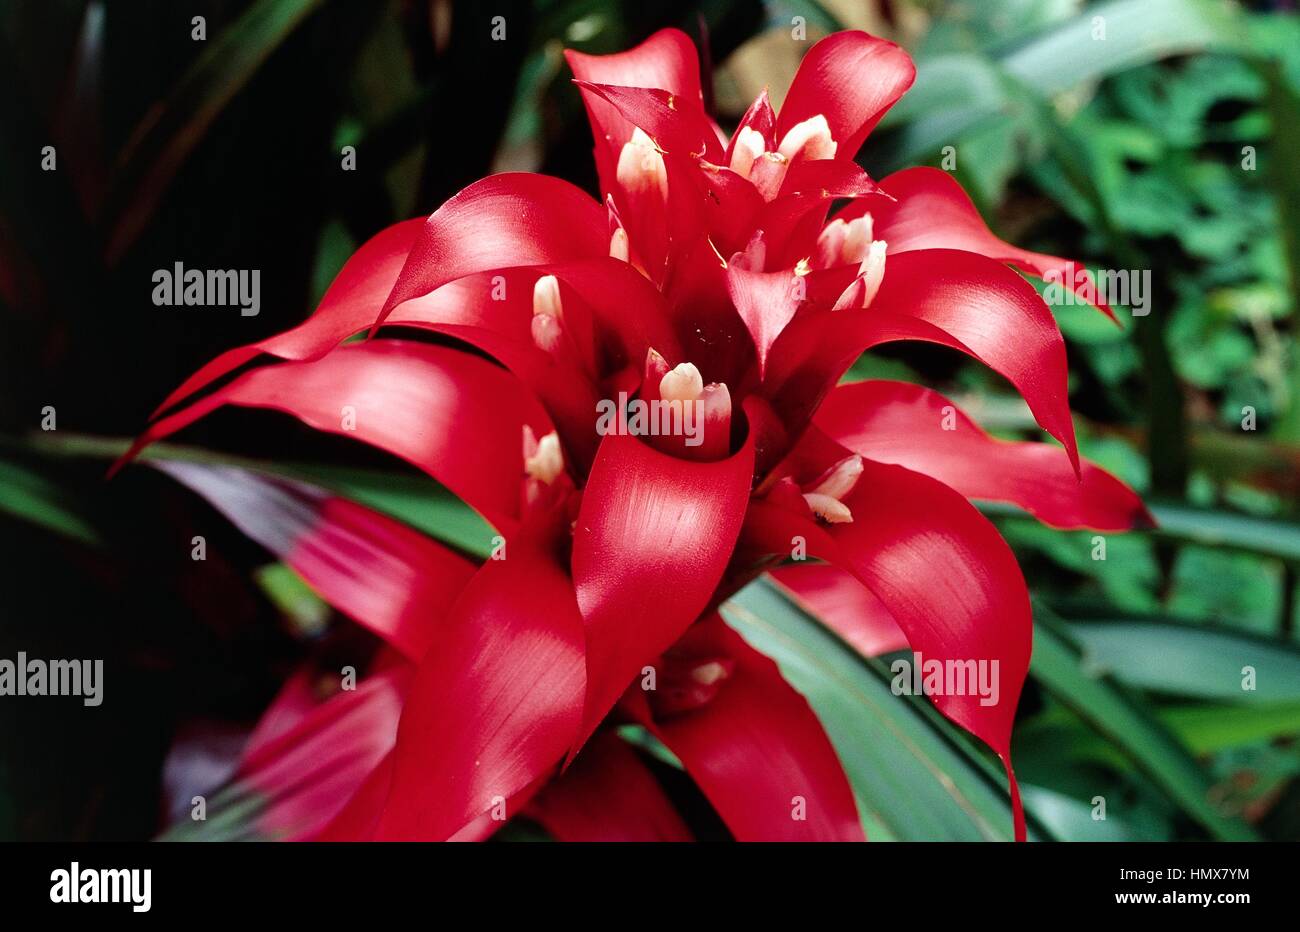 Scarlet star immagini e fotografie stock ad alta risoluzione - Alamy